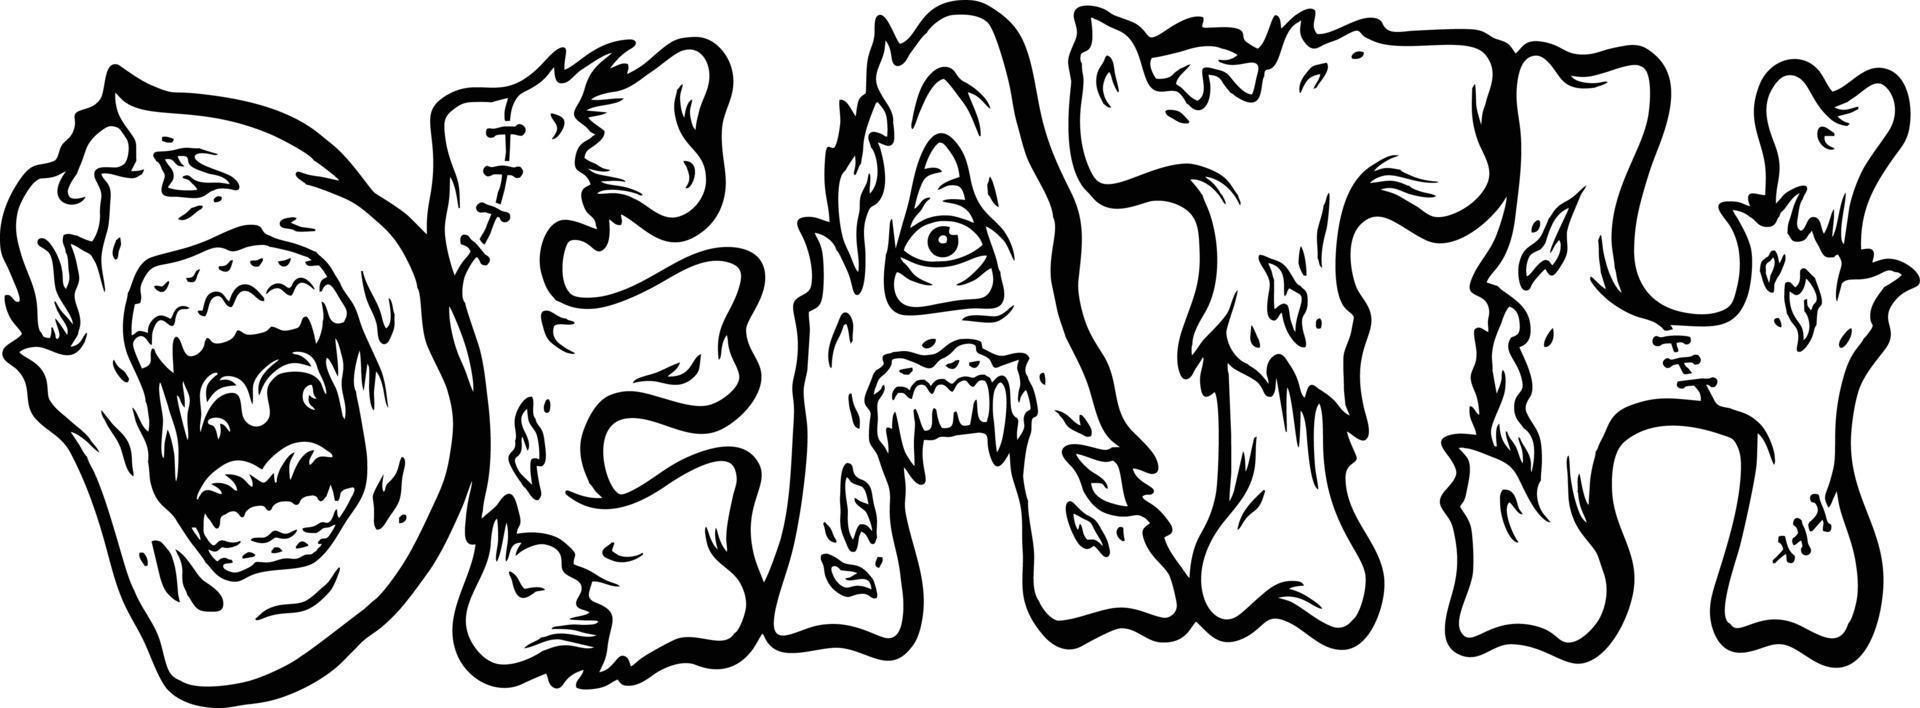 raccapricciante zombie osso lettering parola Morte monocromatico vettore illustrazioni per il tuo opera logo, merce maglietta, adesivi e etichetta disegni, manifesto, saluto carte pubblicità attività commerciale azienda